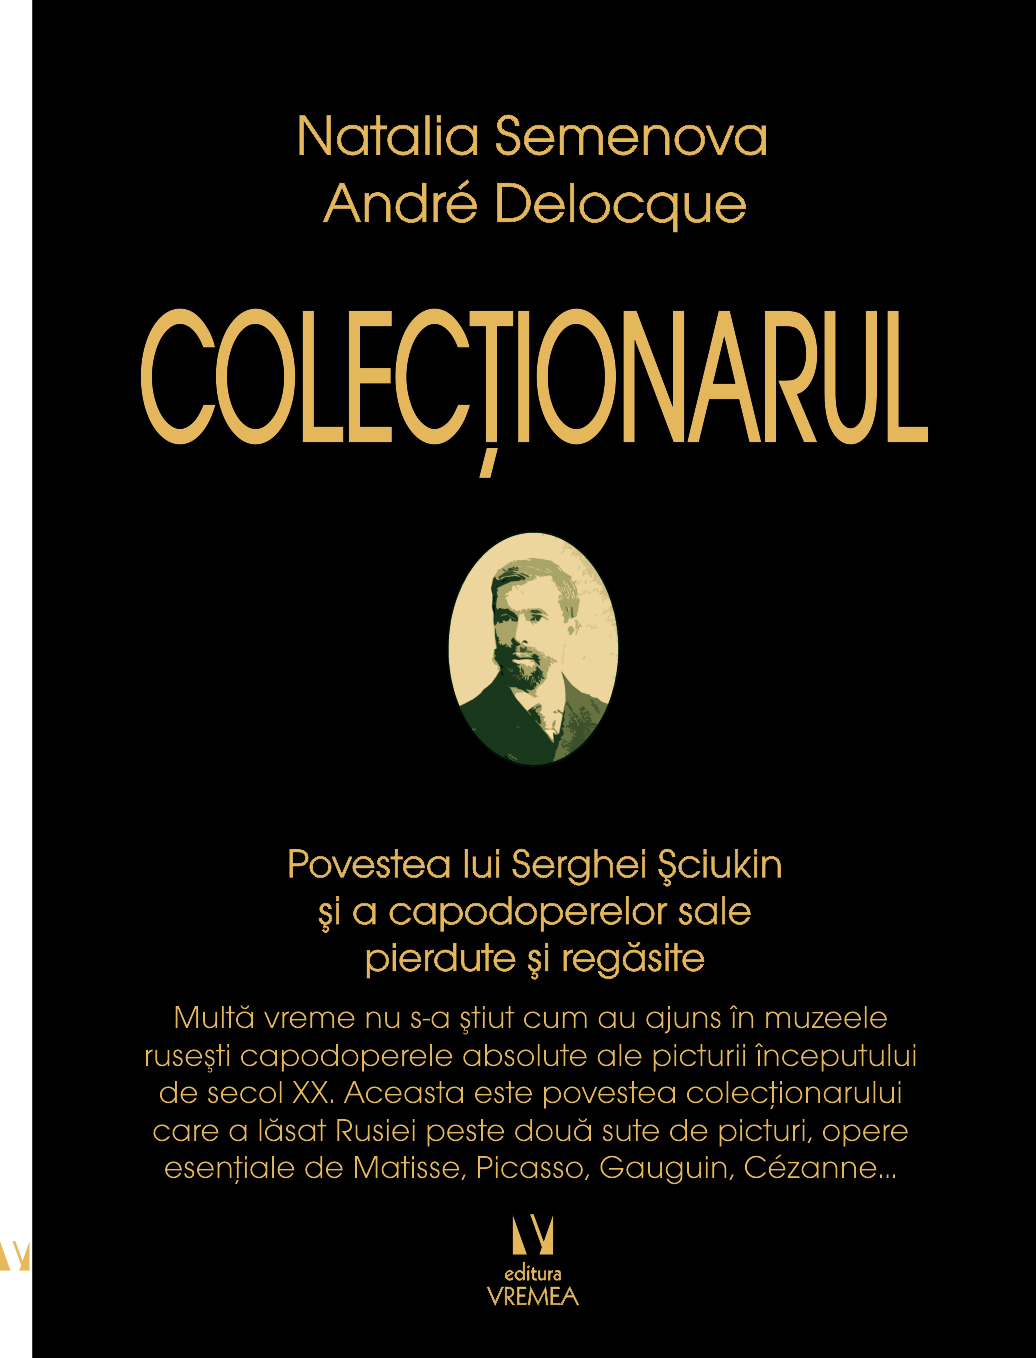 Colectionarul | Natalia Semenova, Andre Delocque carturesti.ro Arta, arhitectura